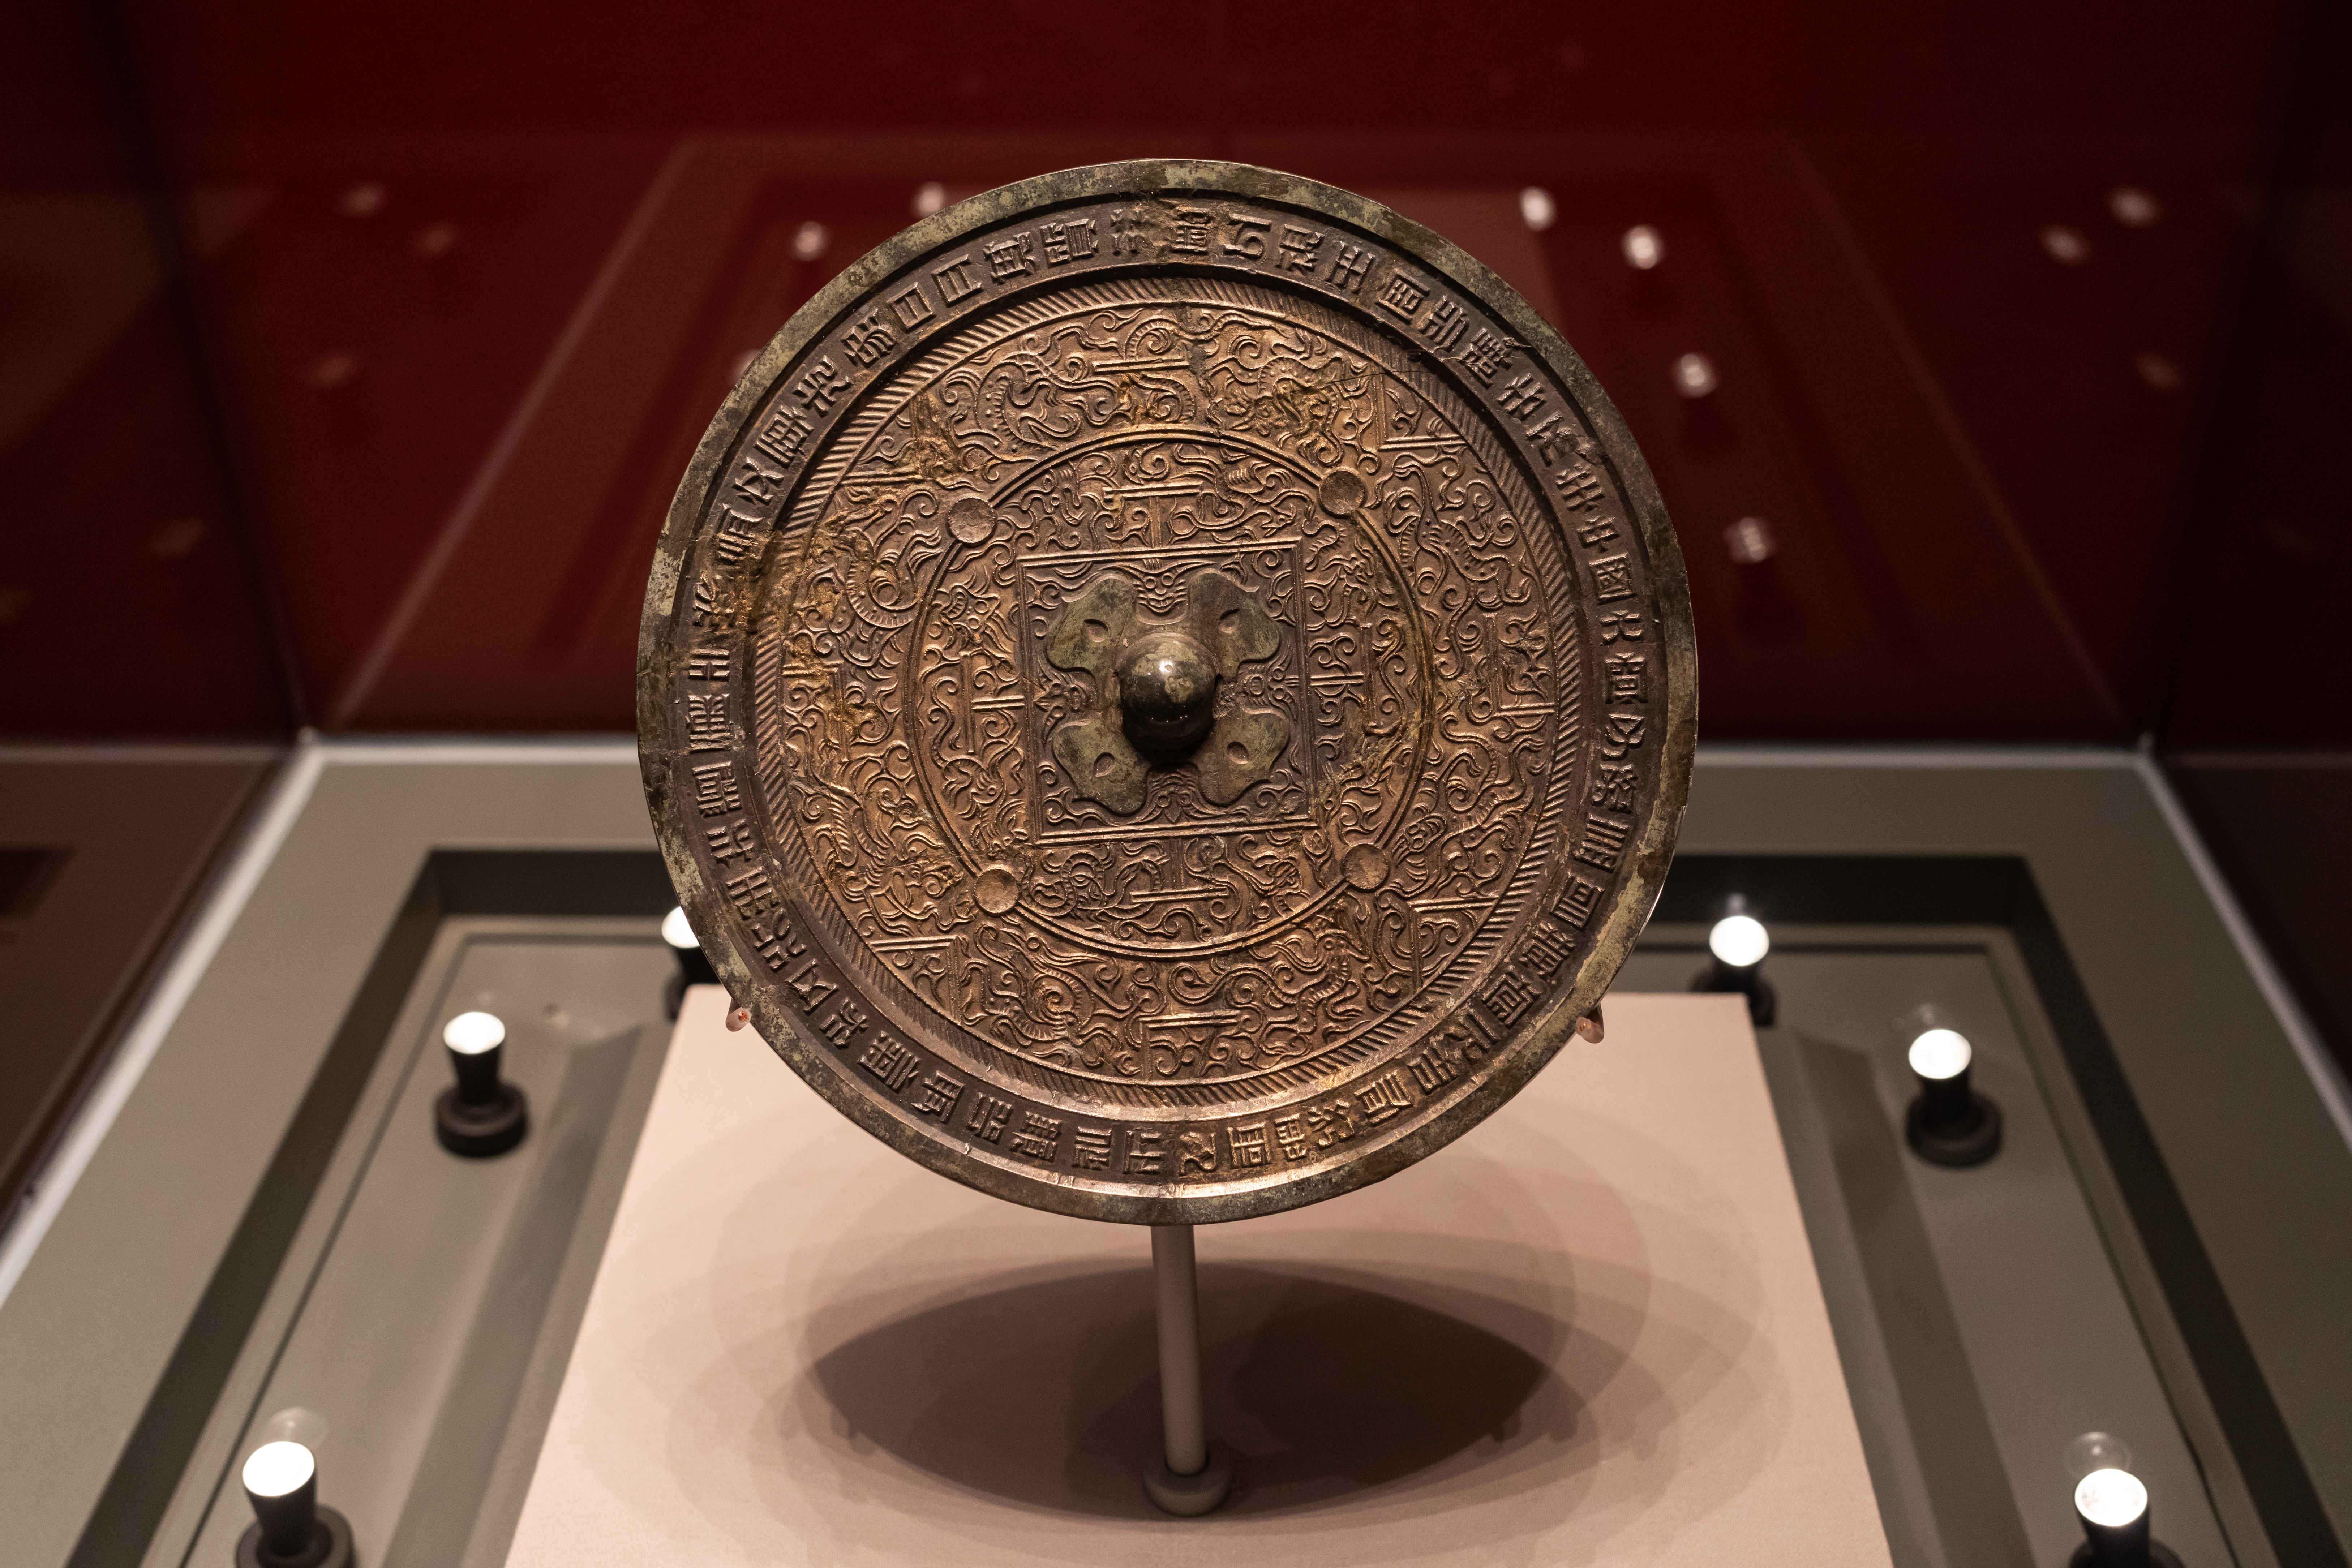 中國古代神奇的透光鏡會呈現背面圖案| 古鏡| 夢溪筆談| 沈括| 大紀元